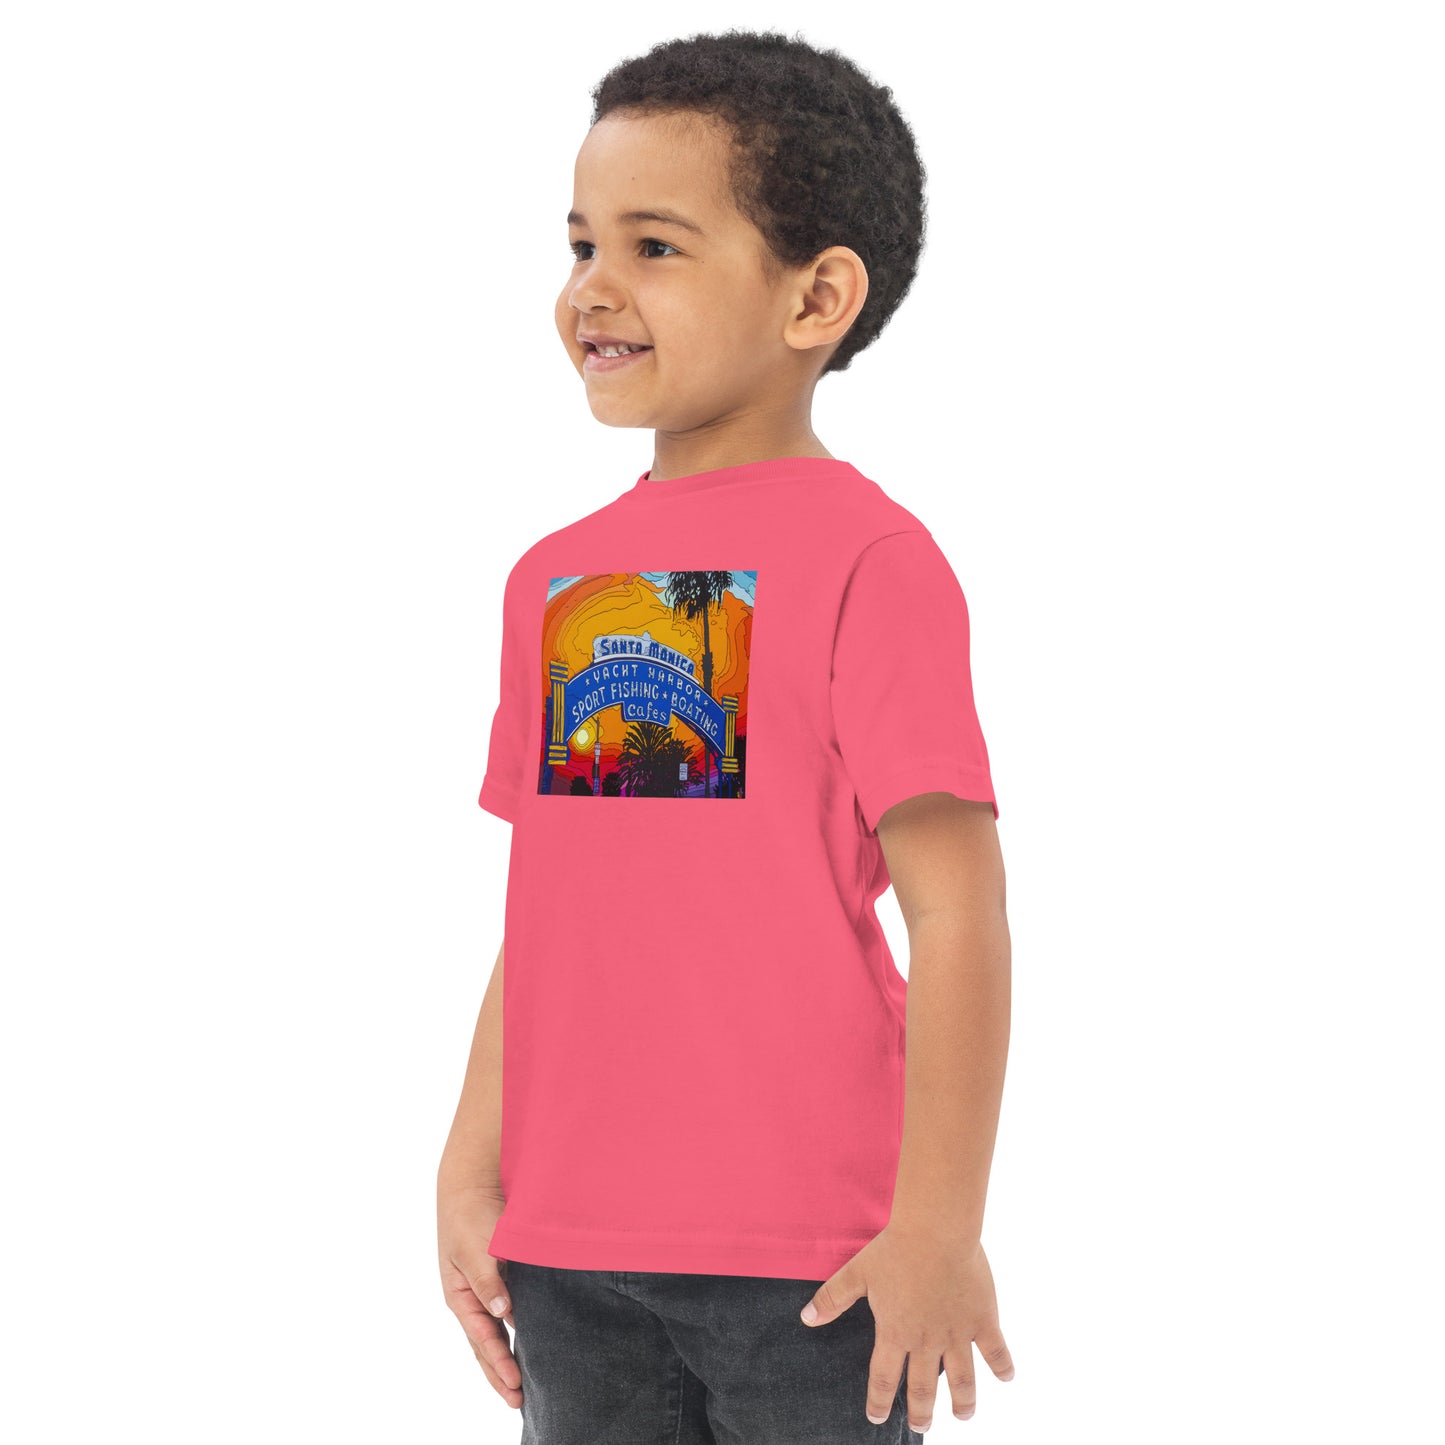 Santa Monica Pier Sign - Toddler jersey t-shirt